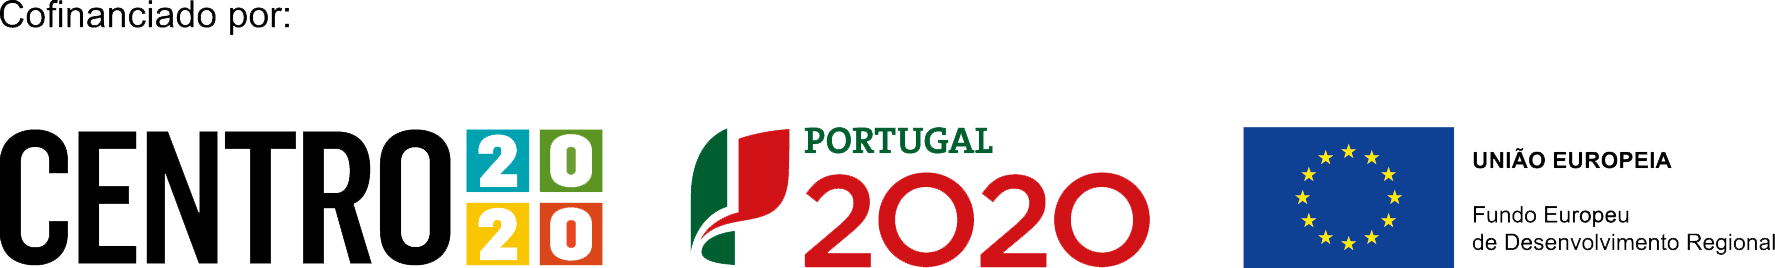 Projecto Cofinanciado por Centro 2020 - Portugal 2020 - União Europeia